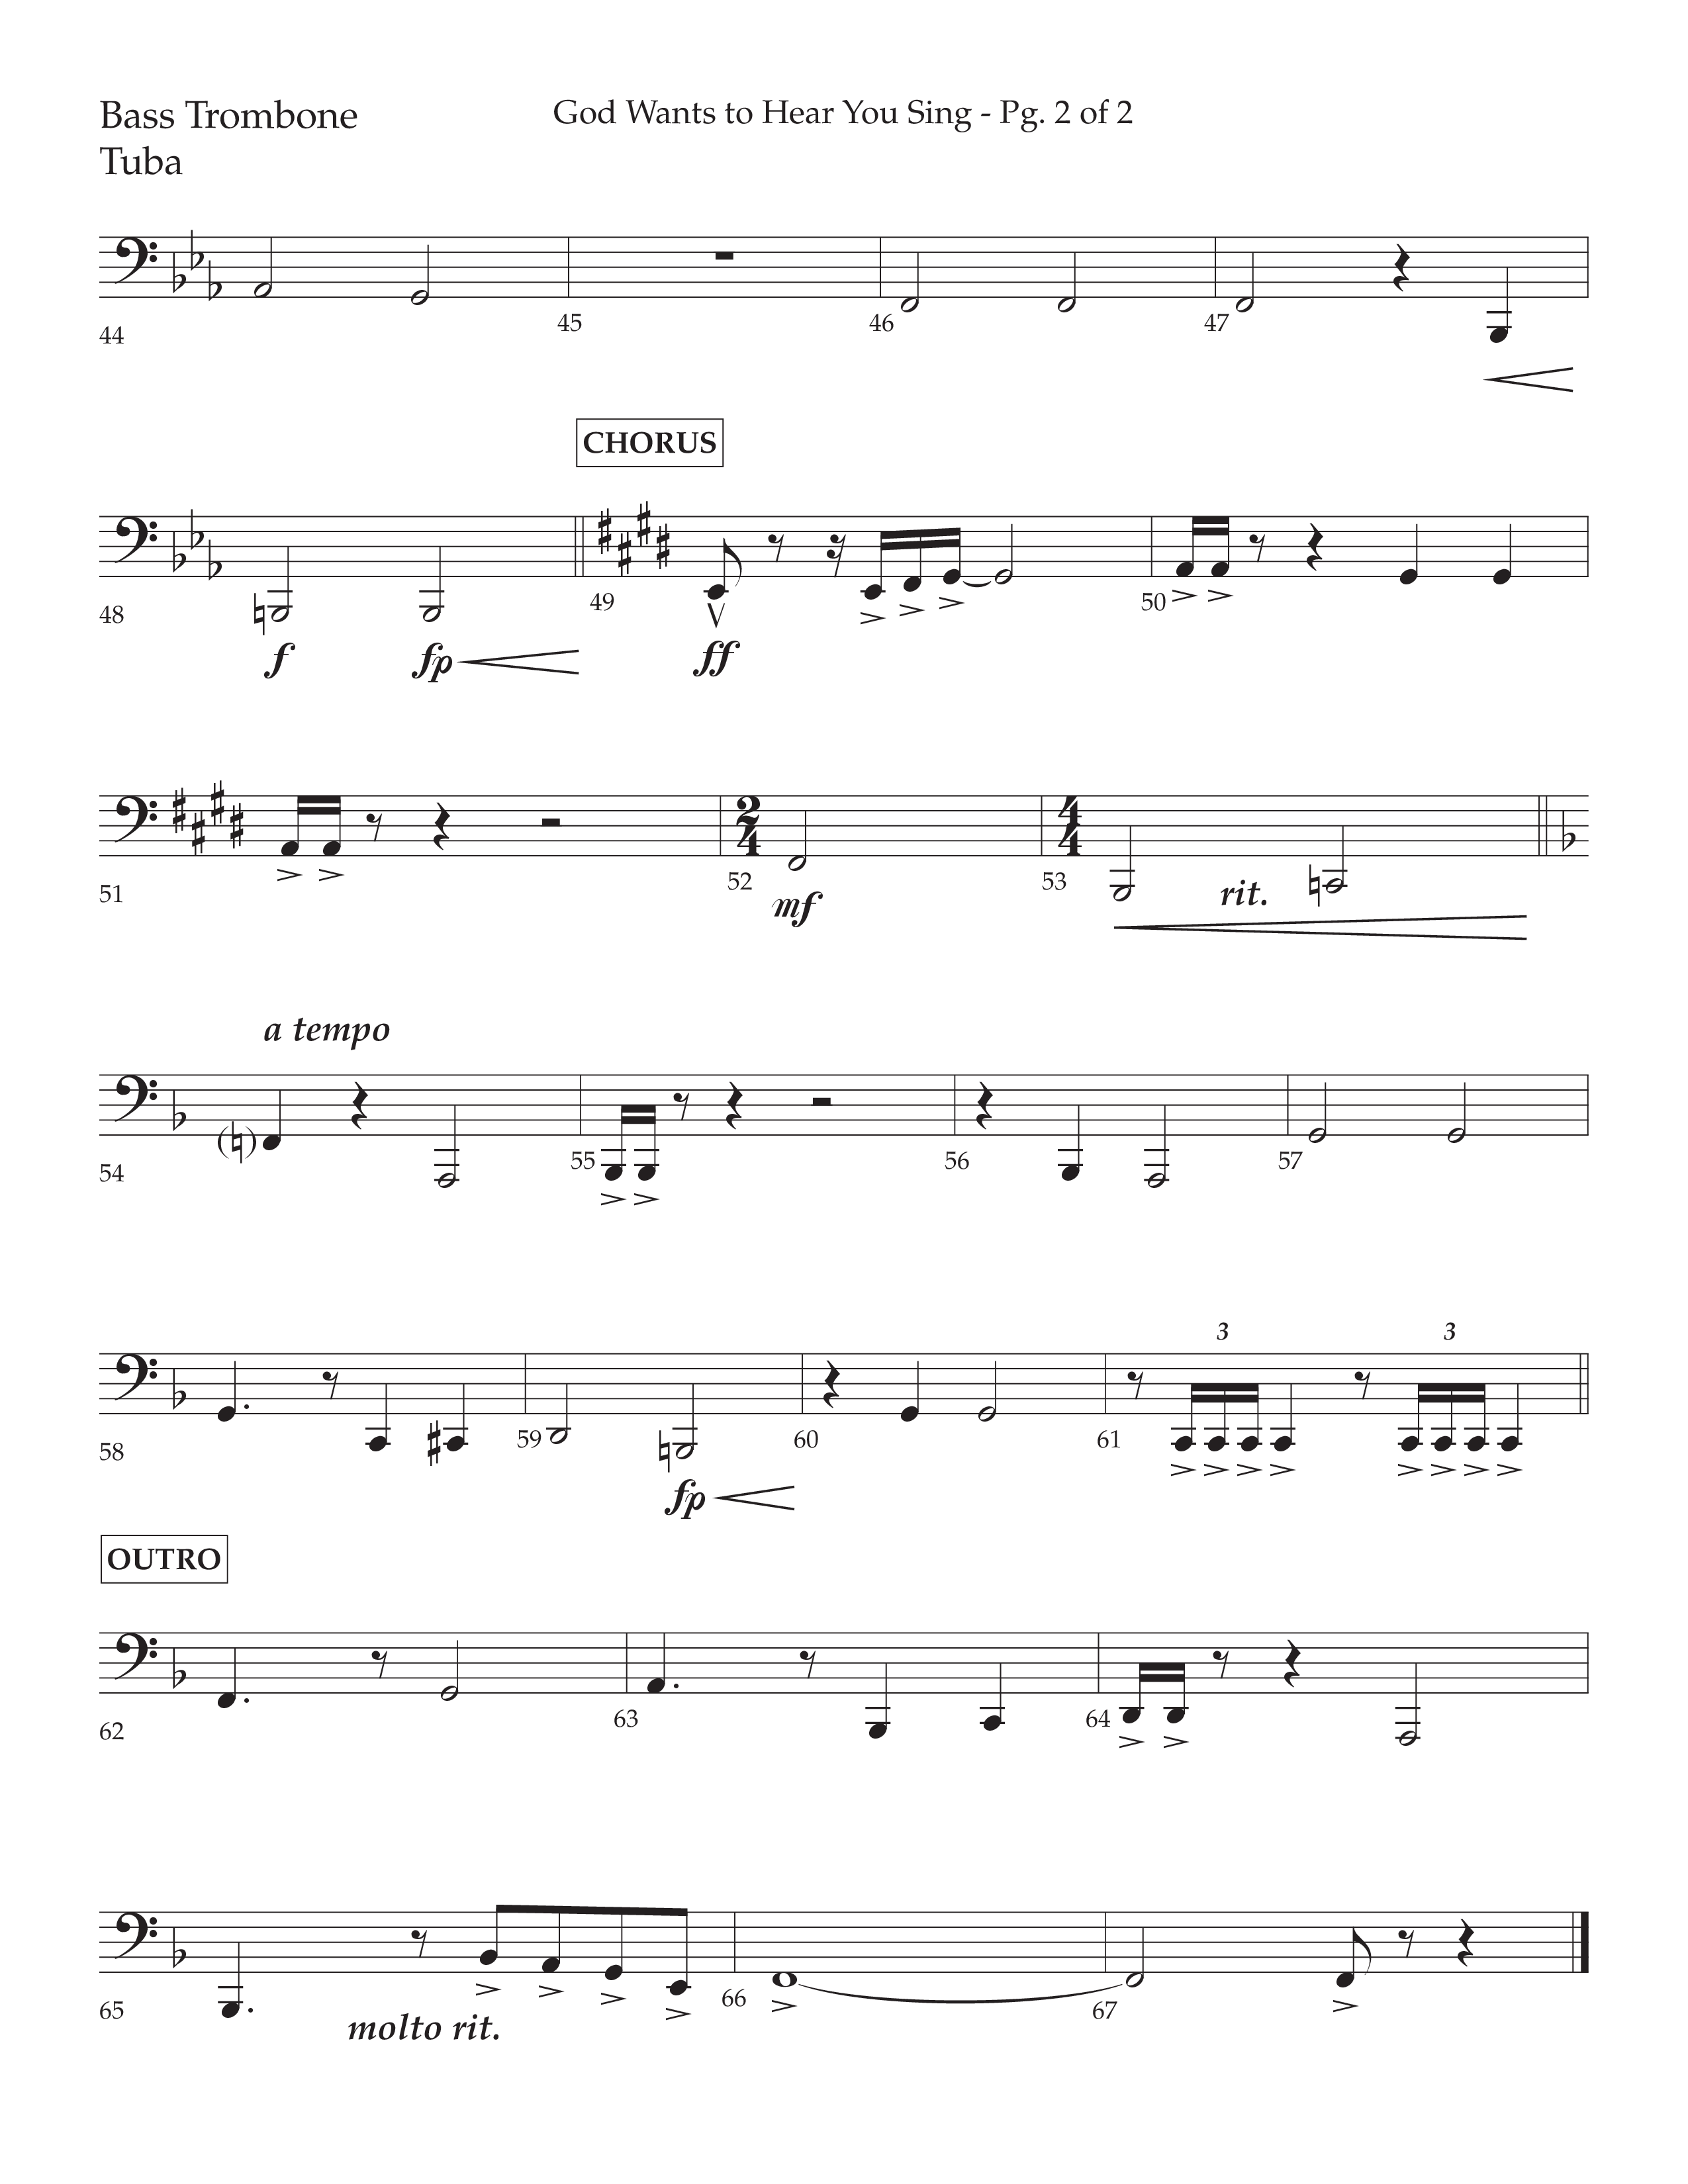 God Wants To Hear You Sing (Choral Anthem SATB) Orchestration (Lifeway Choral / Arr. Bradley Knight)